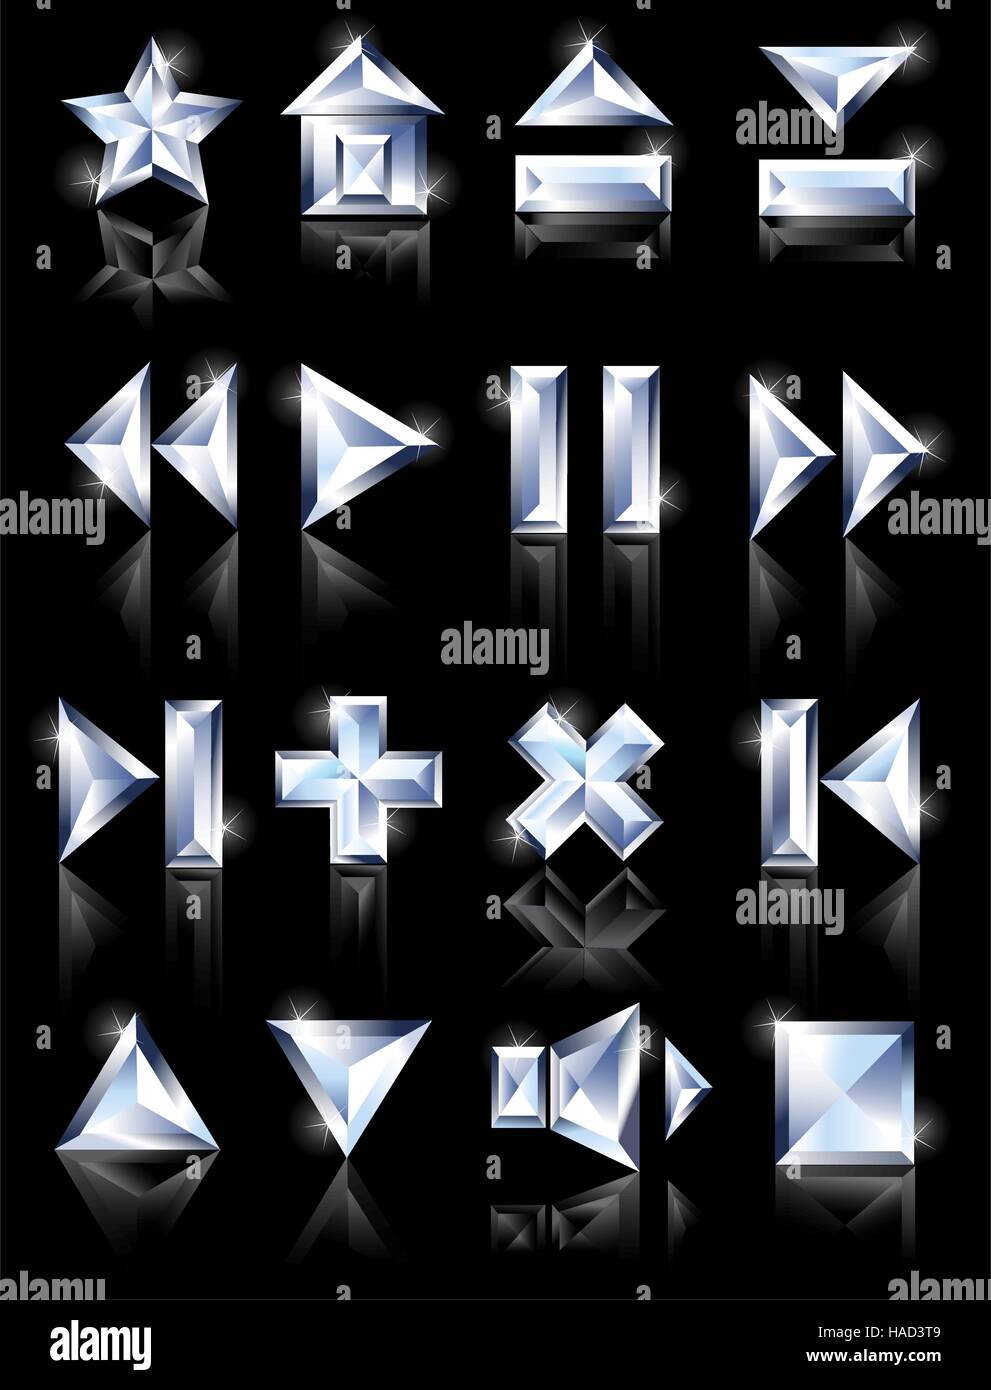 Diamond cut multimedia des icônes sur un fond miroir noir : pause, accueil, de chargement, de plus, d'autres jeu, Illustration de Vecteur